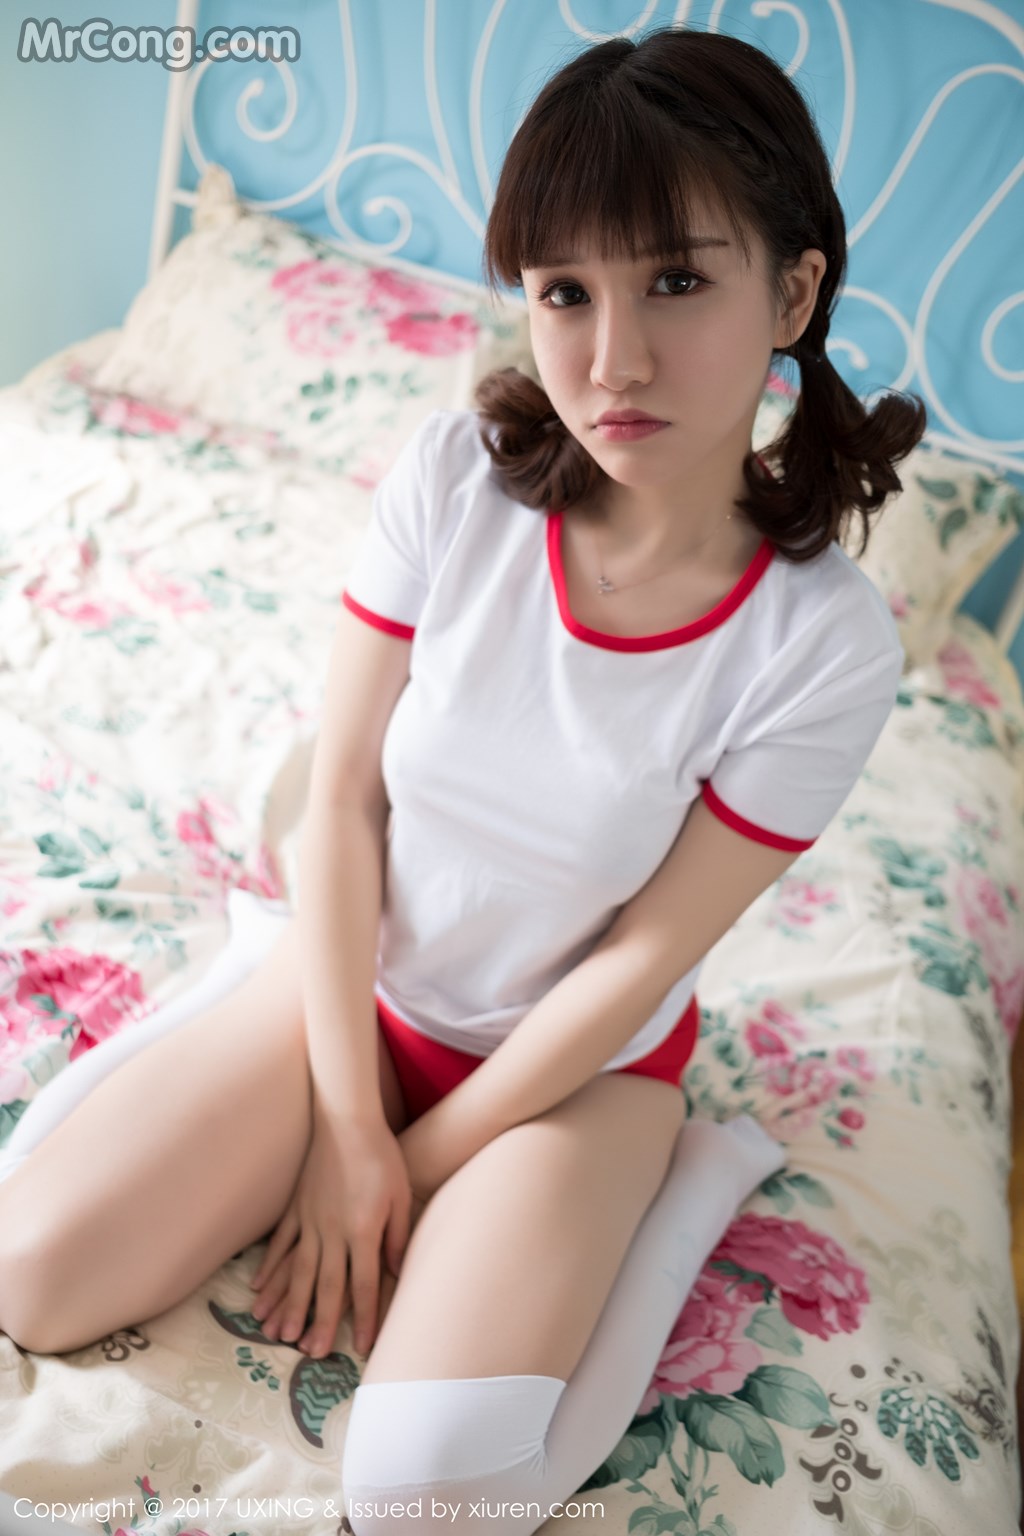 UXING Vol.040: Model Aojiao Meng Meng (K8 傲 娇 萌萌 Vivian) (61 photos) photo 1-1